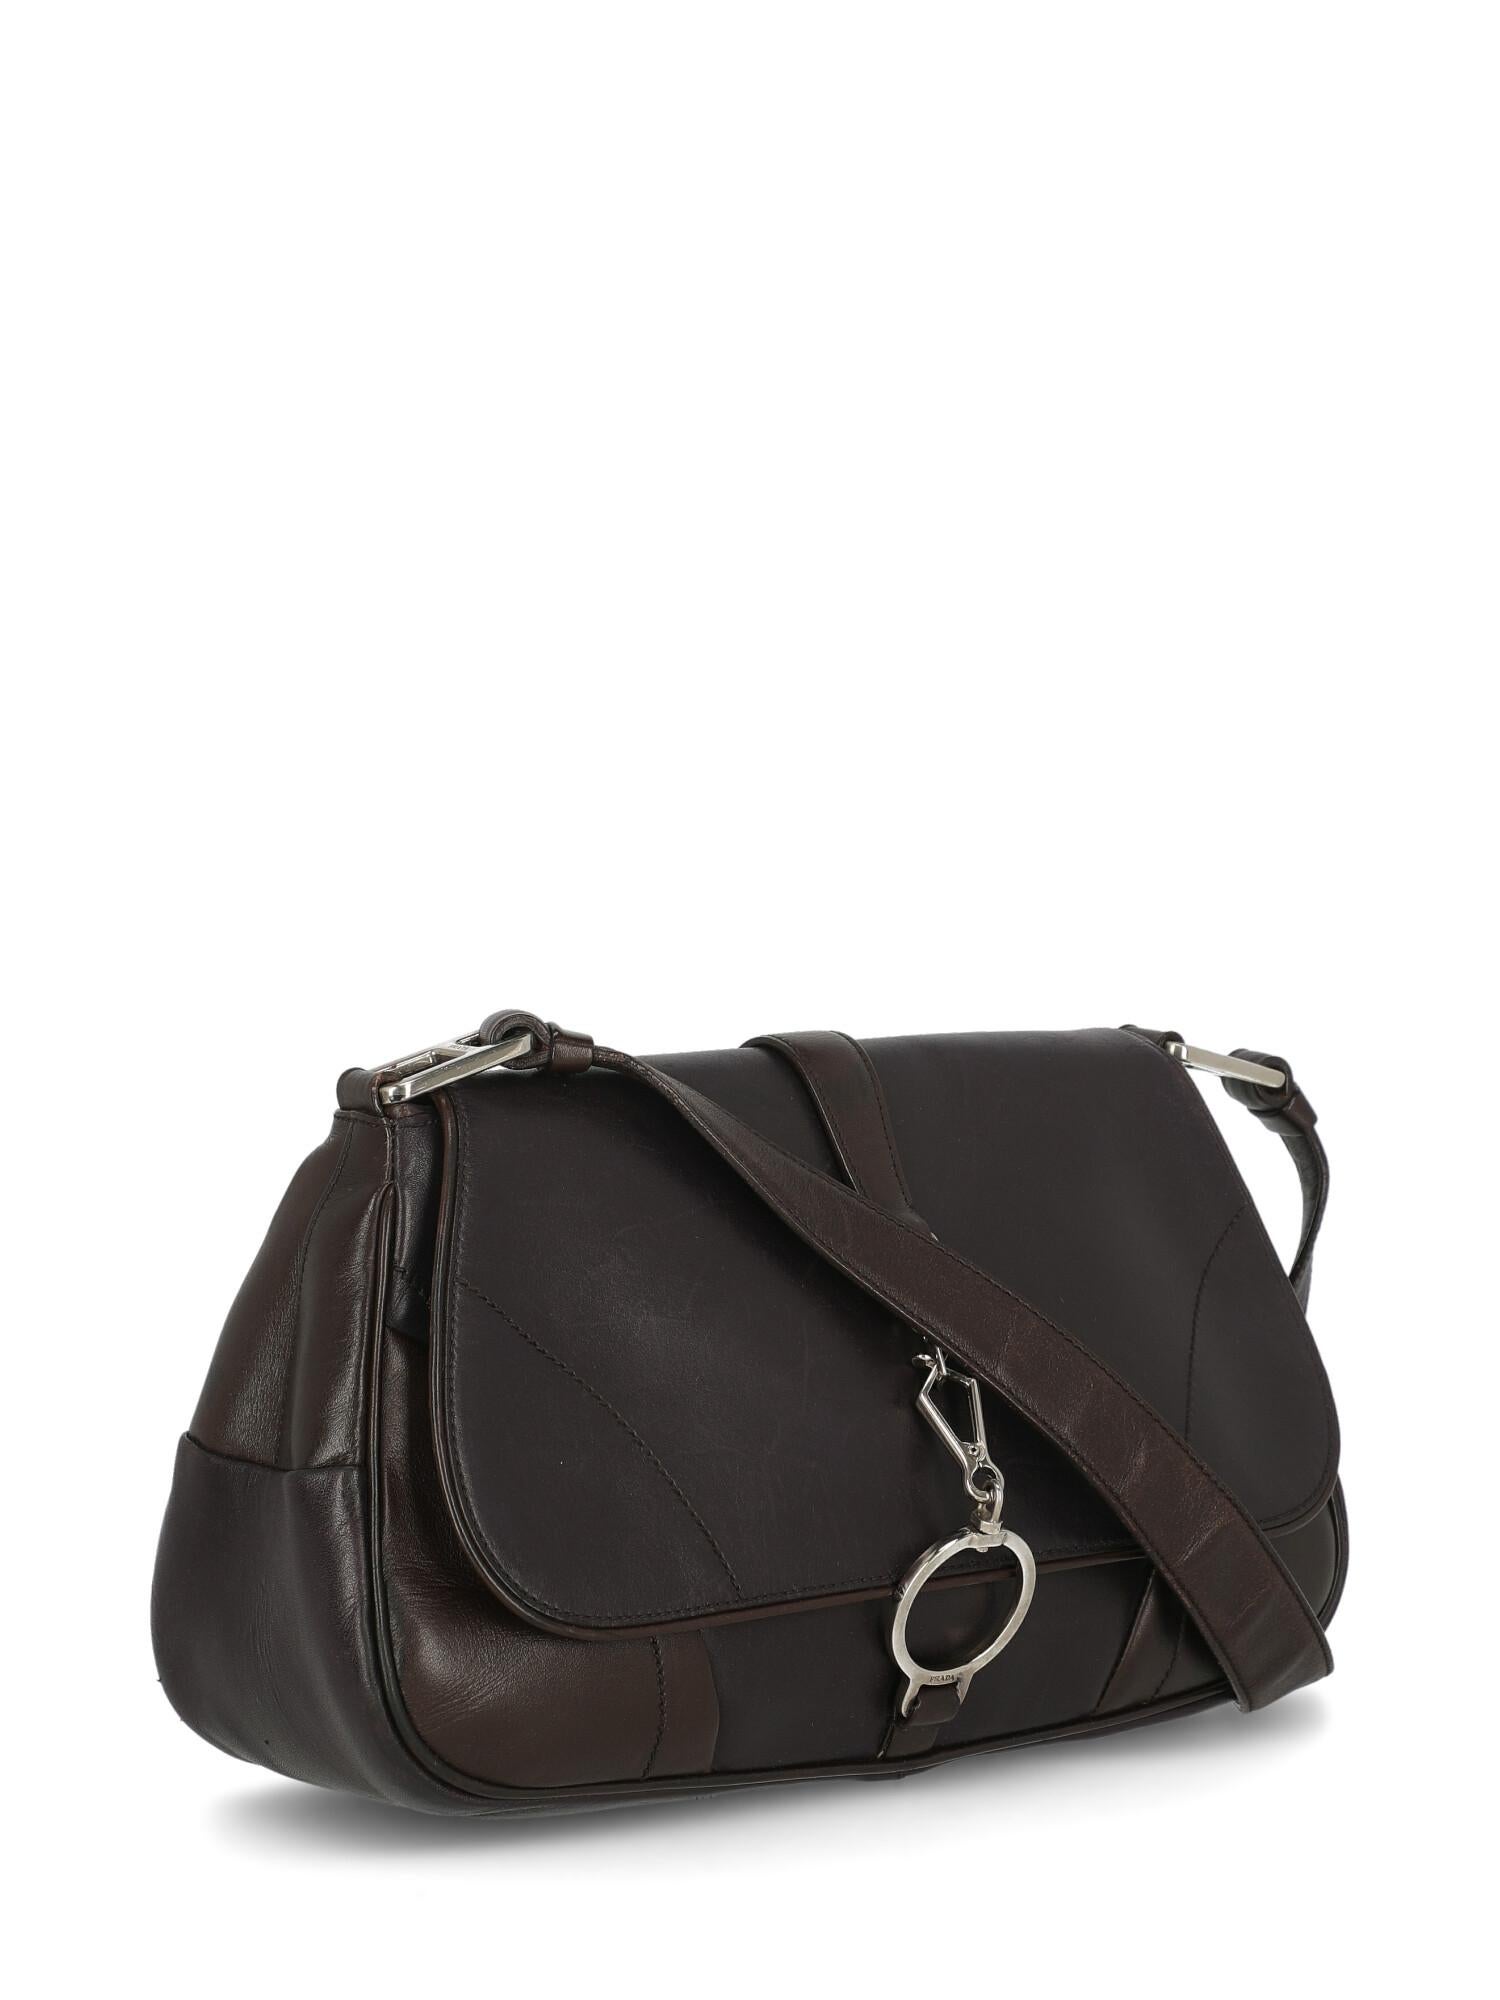 Black Prada Woman Shoulder bag Brown Leather For Sale